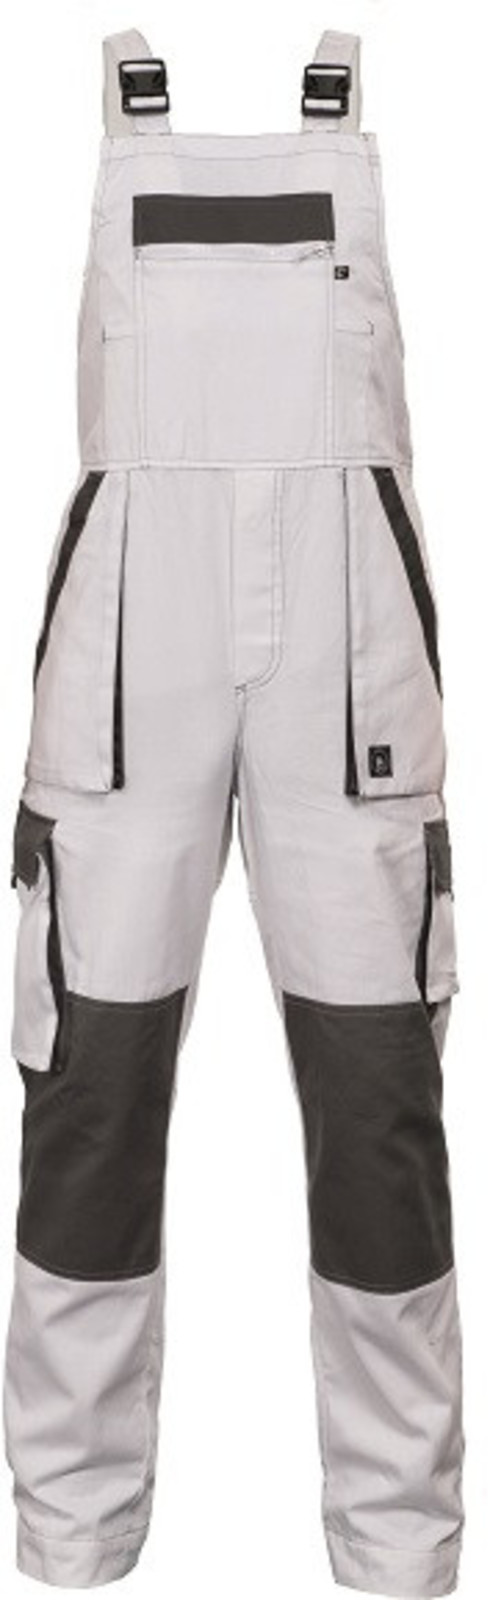 Tenšie bavlnené montérky na traky Max Summer - veľkosť: 62, farba: biela/sivá